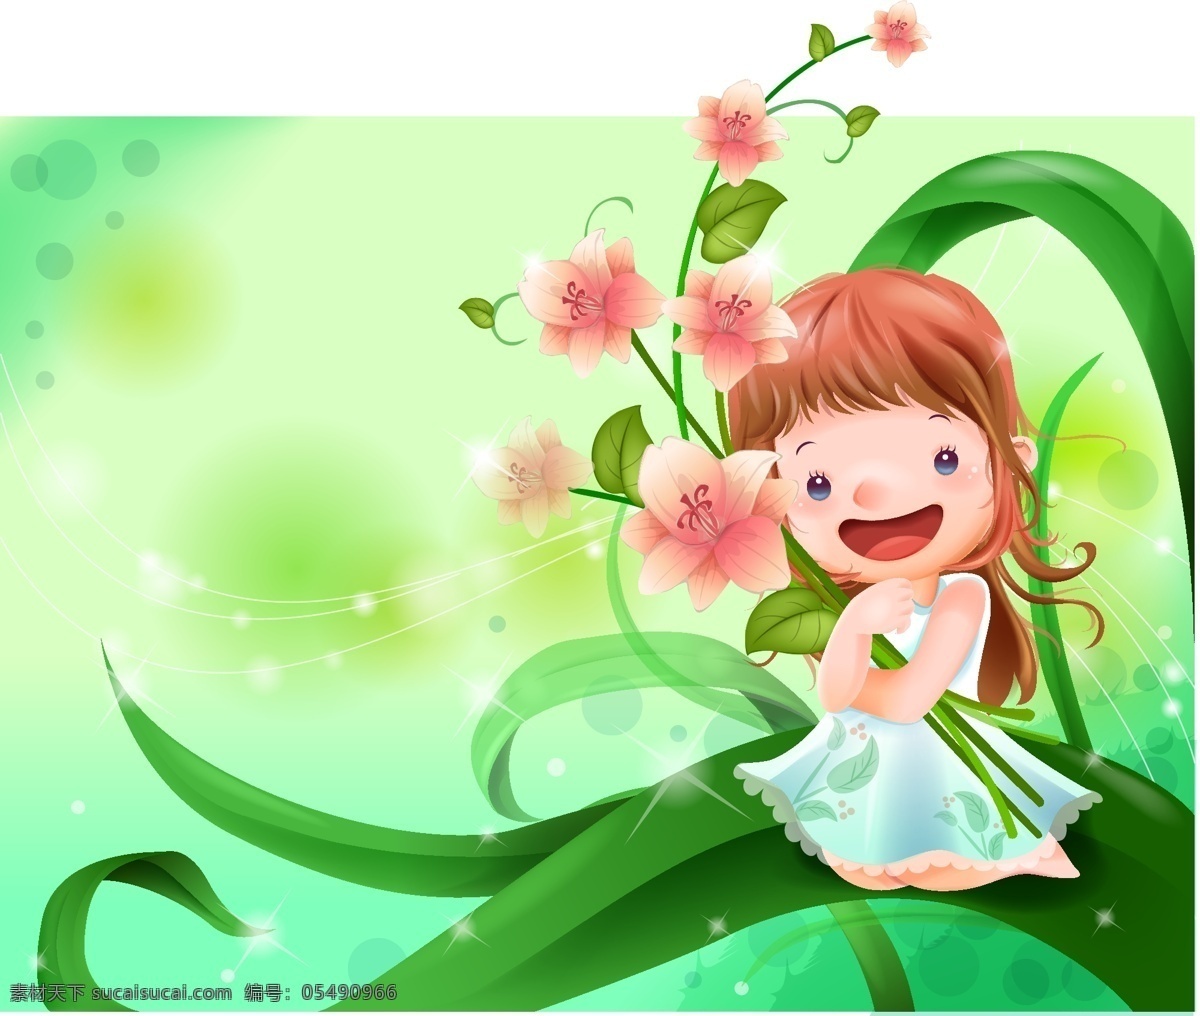 可爱 卡通 小女孩 花朵 花瓣 植物 叶子 绿色 曲线 漂亮 儿童幼儿 卡通设计 矢量